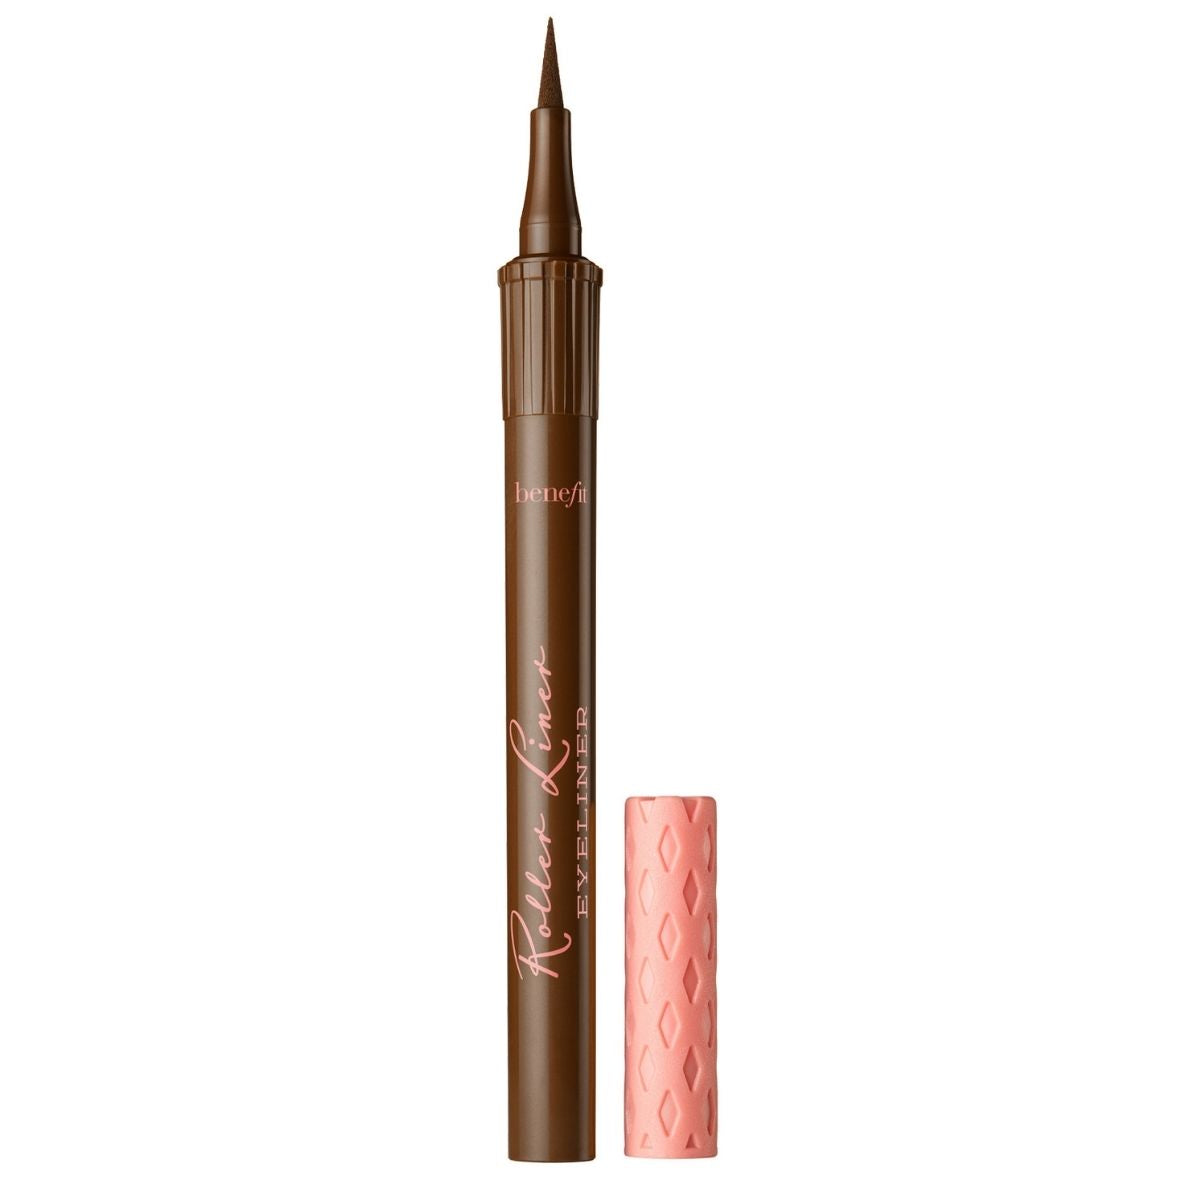 Benefit Roller Liner Eyeliner Pencil